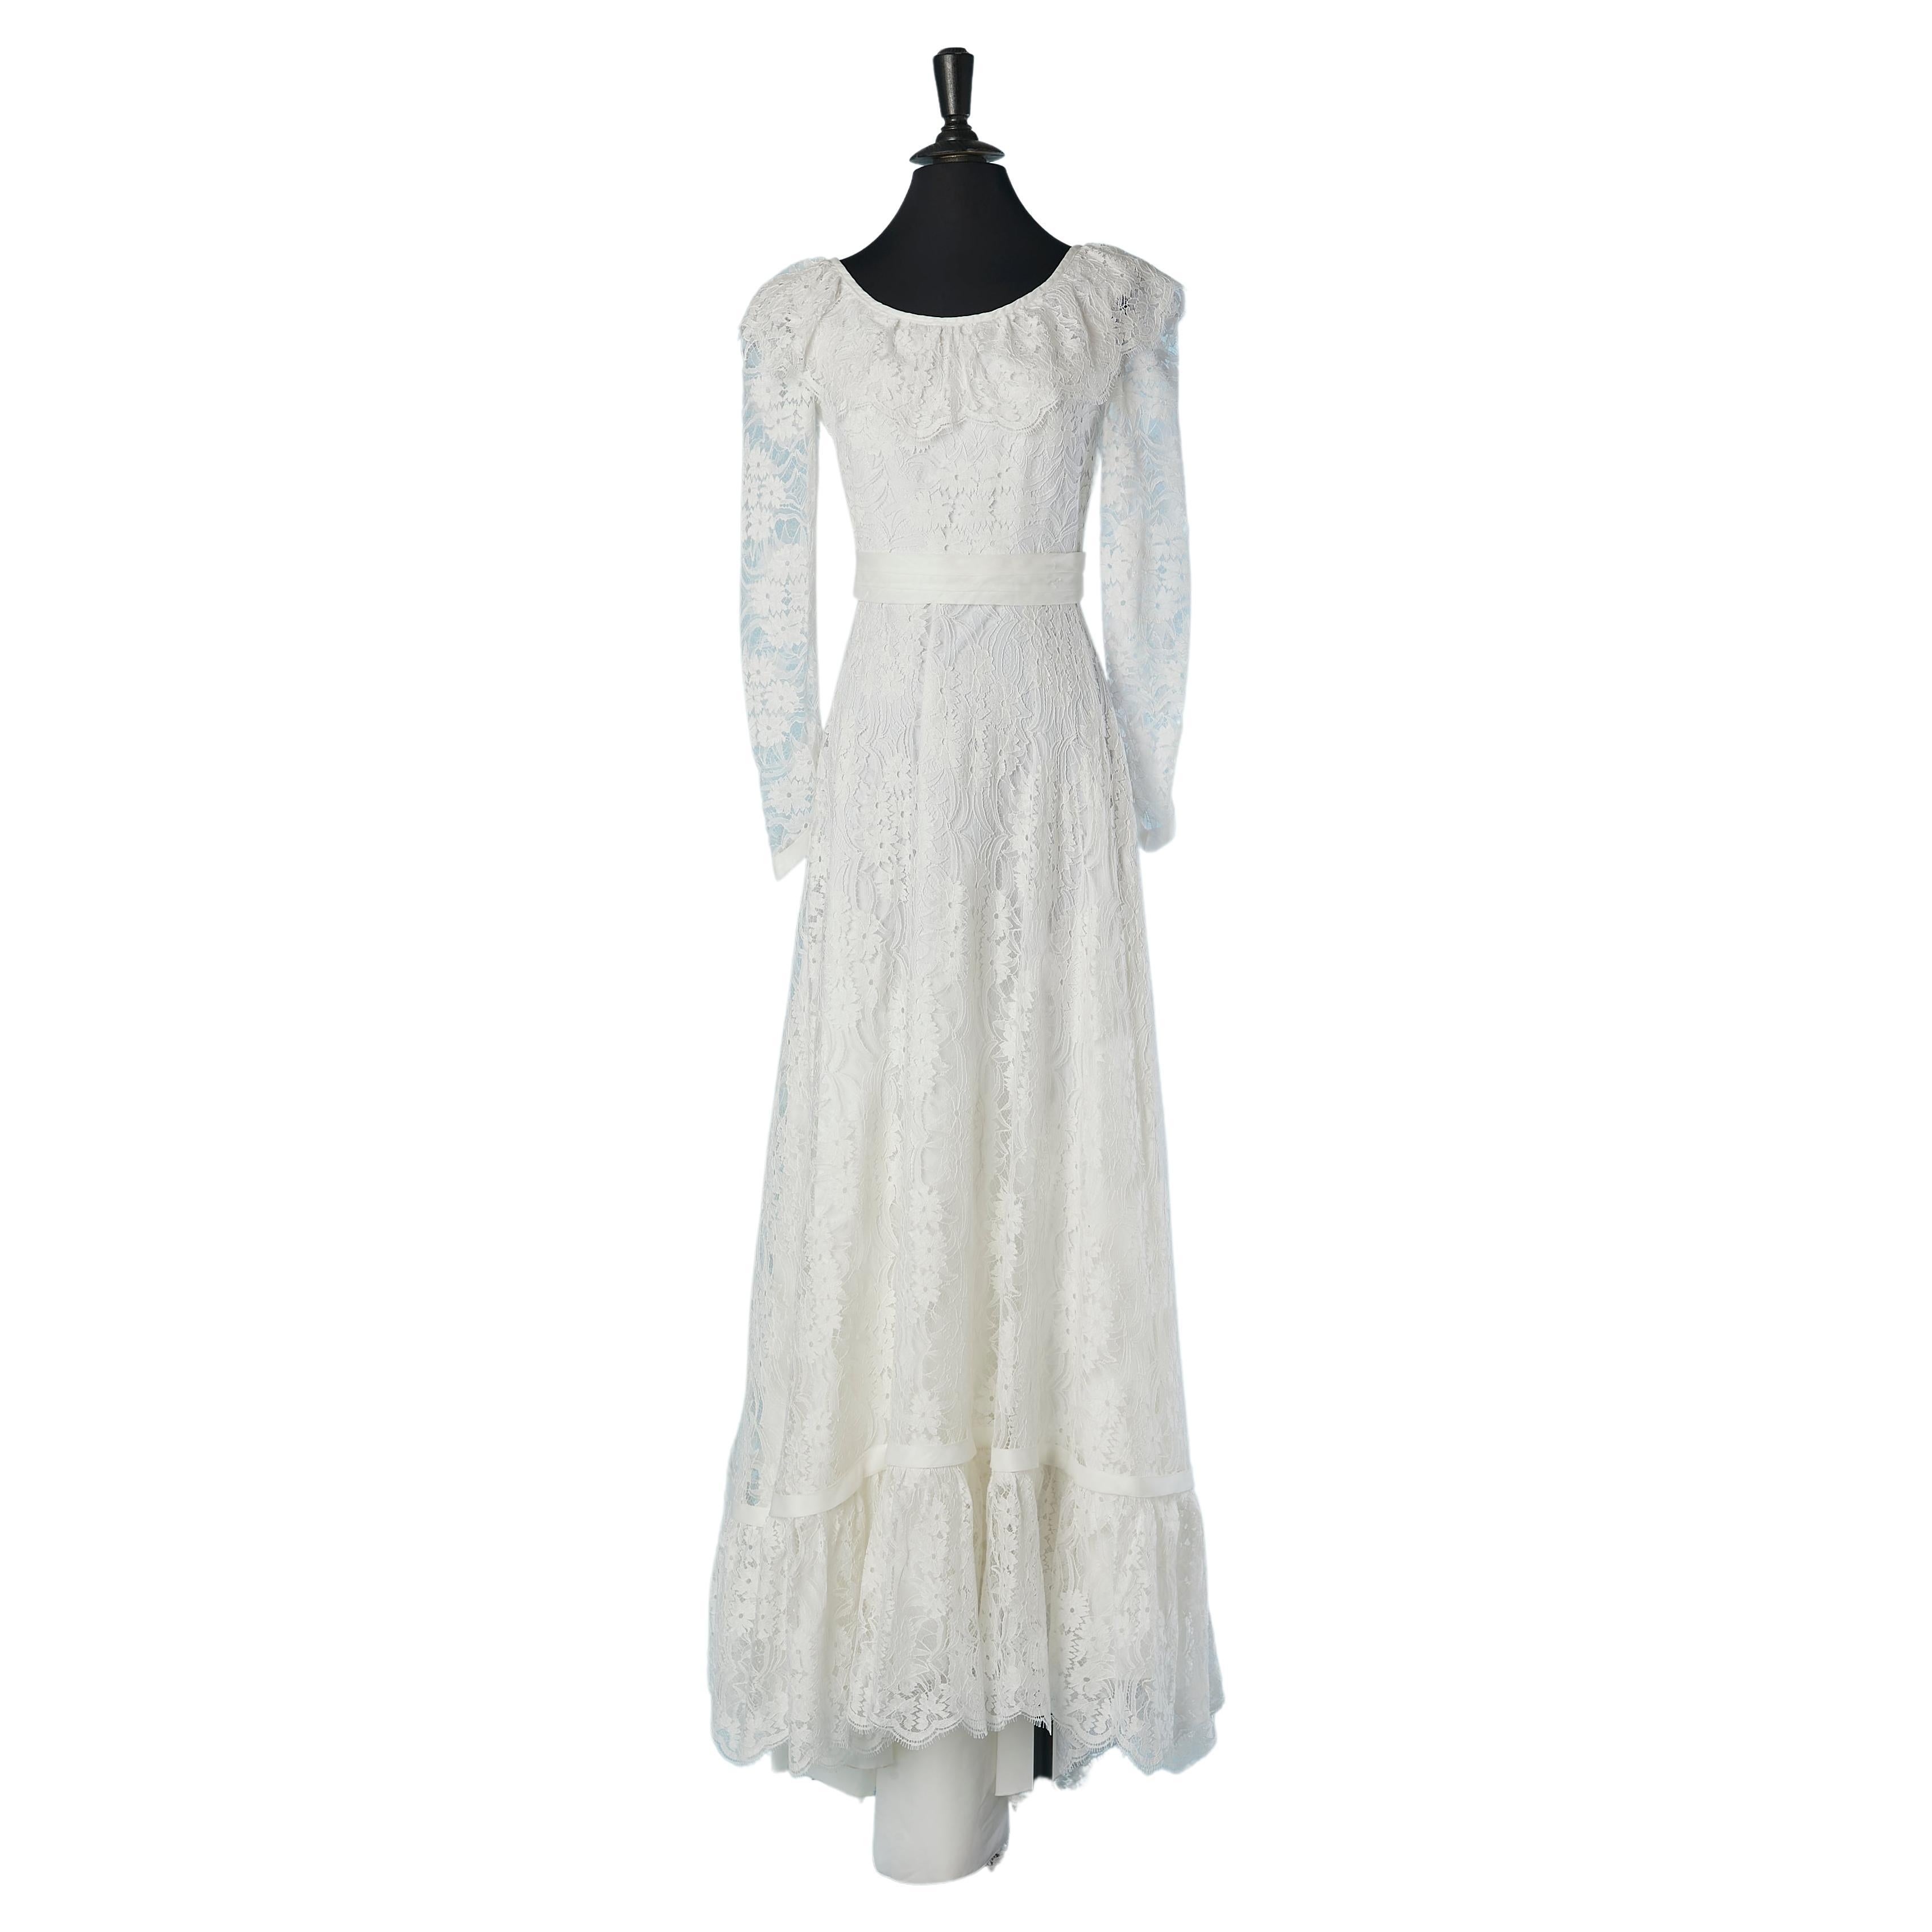 White lace wedding dress with ruffles Les mariées de Jacques Heim  For Sale